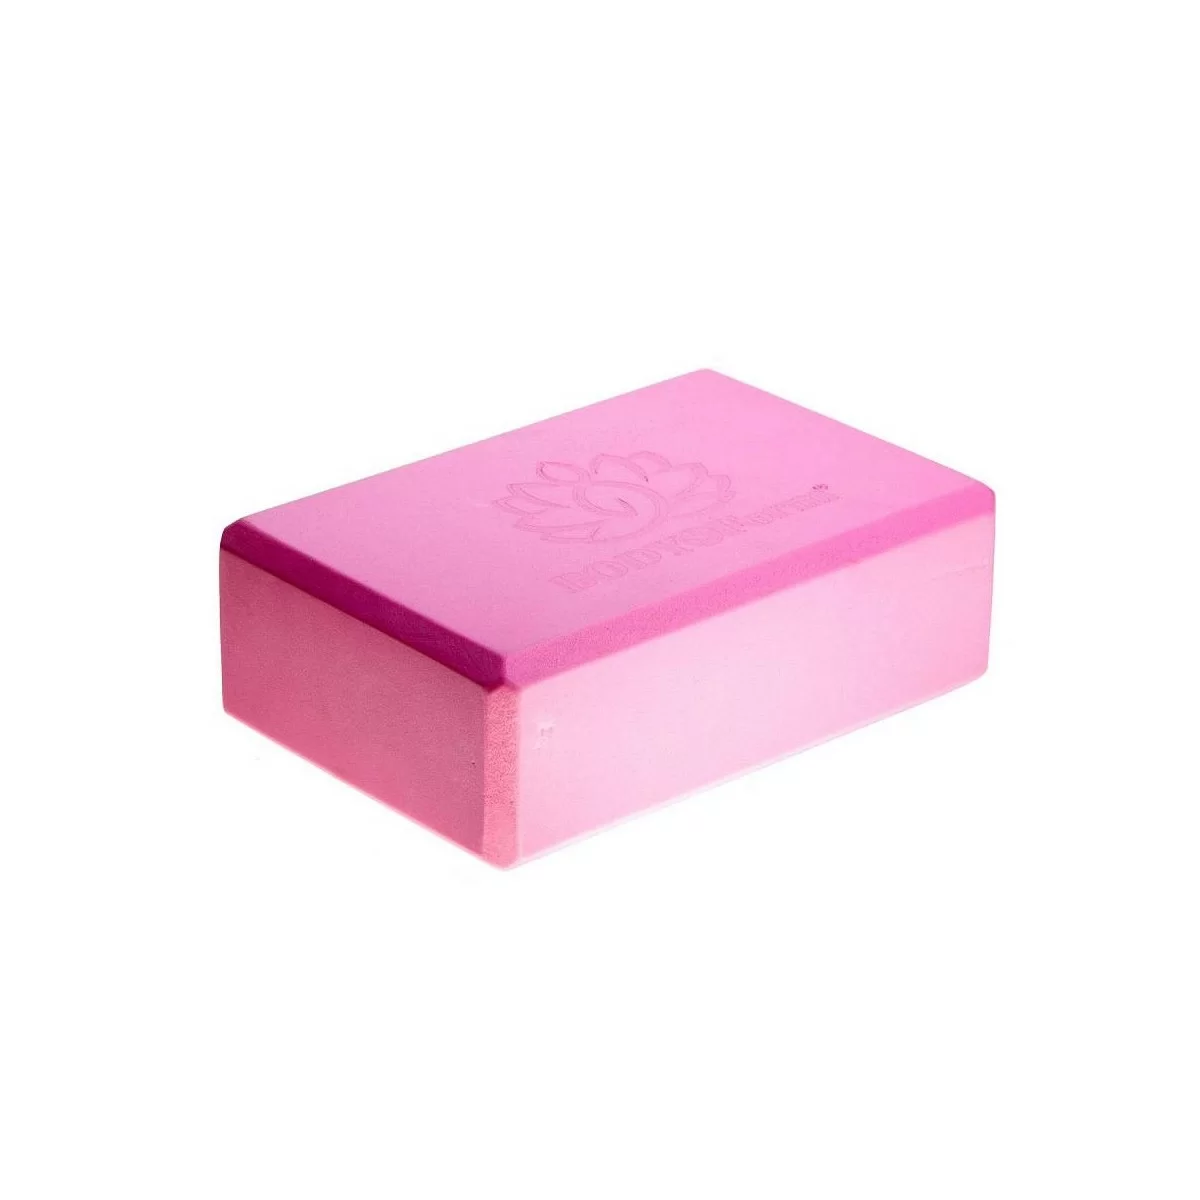 Реальное фото Блок для йоги BF-YB02 розовый от магазина СпортСЕ